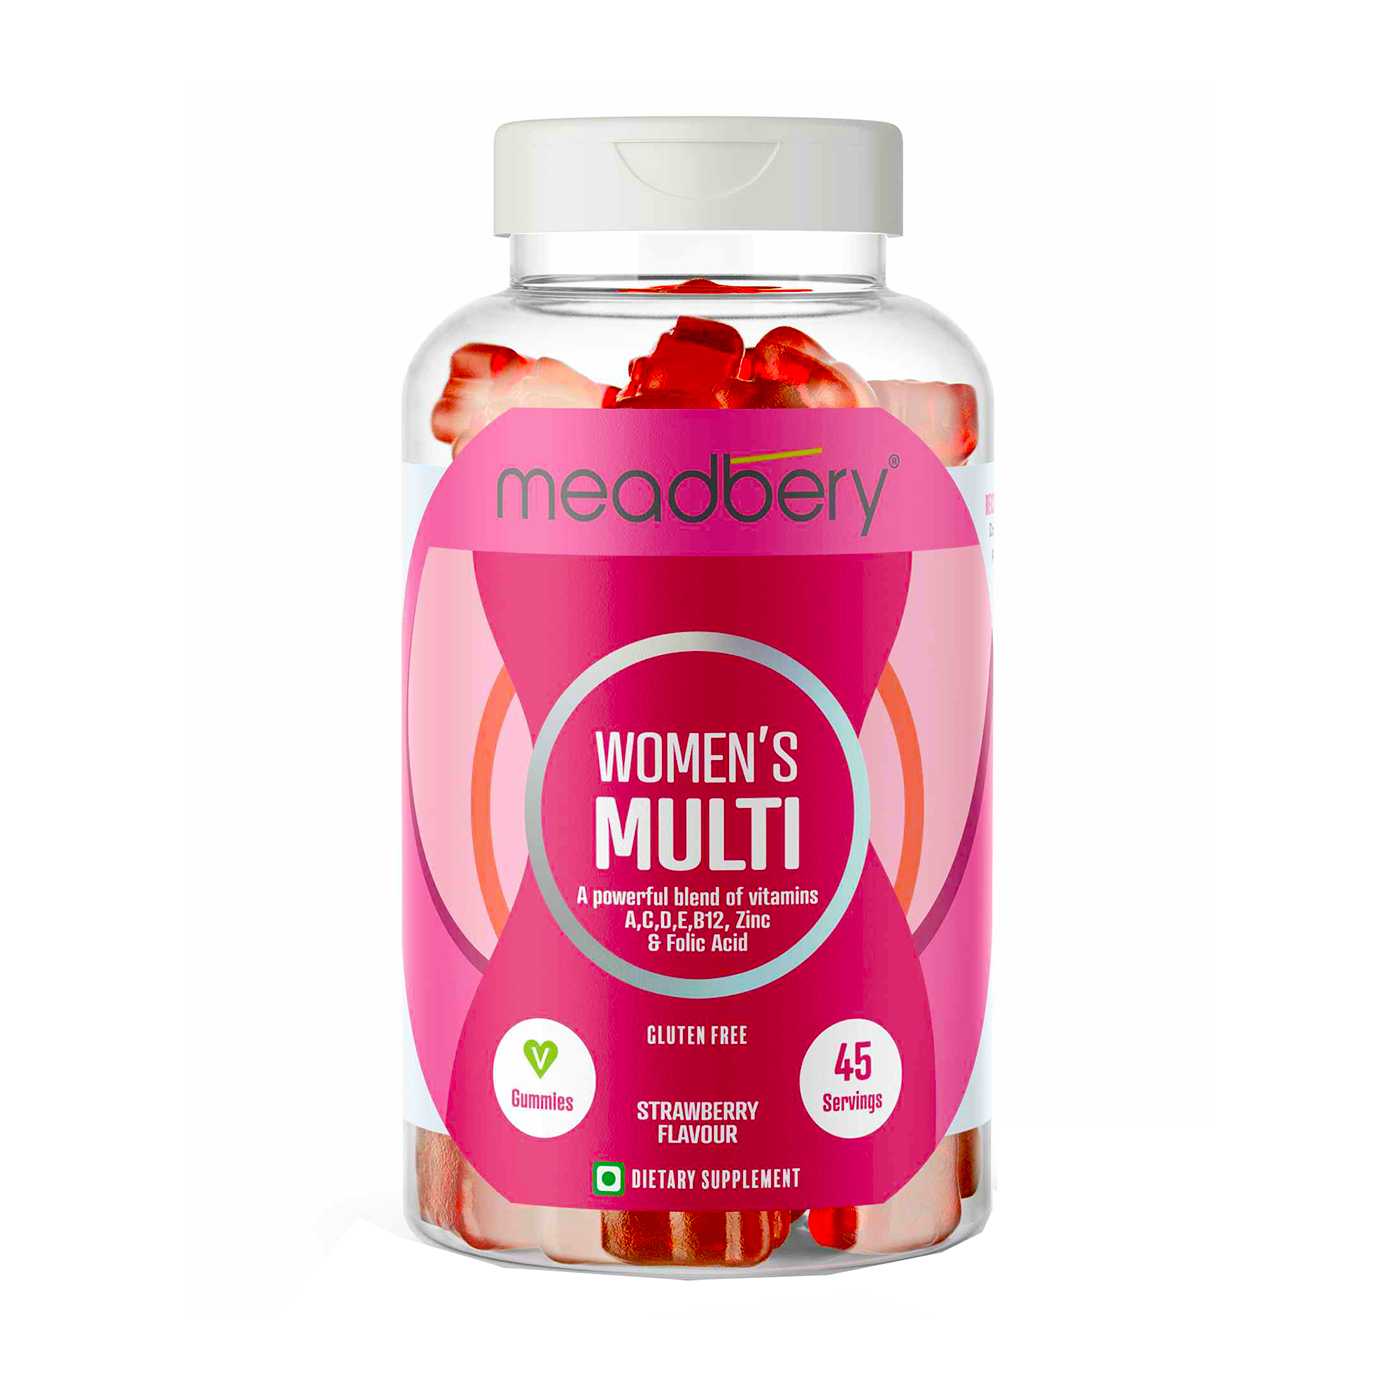 Meadbery Women's Multivitamin Gummy 45pc